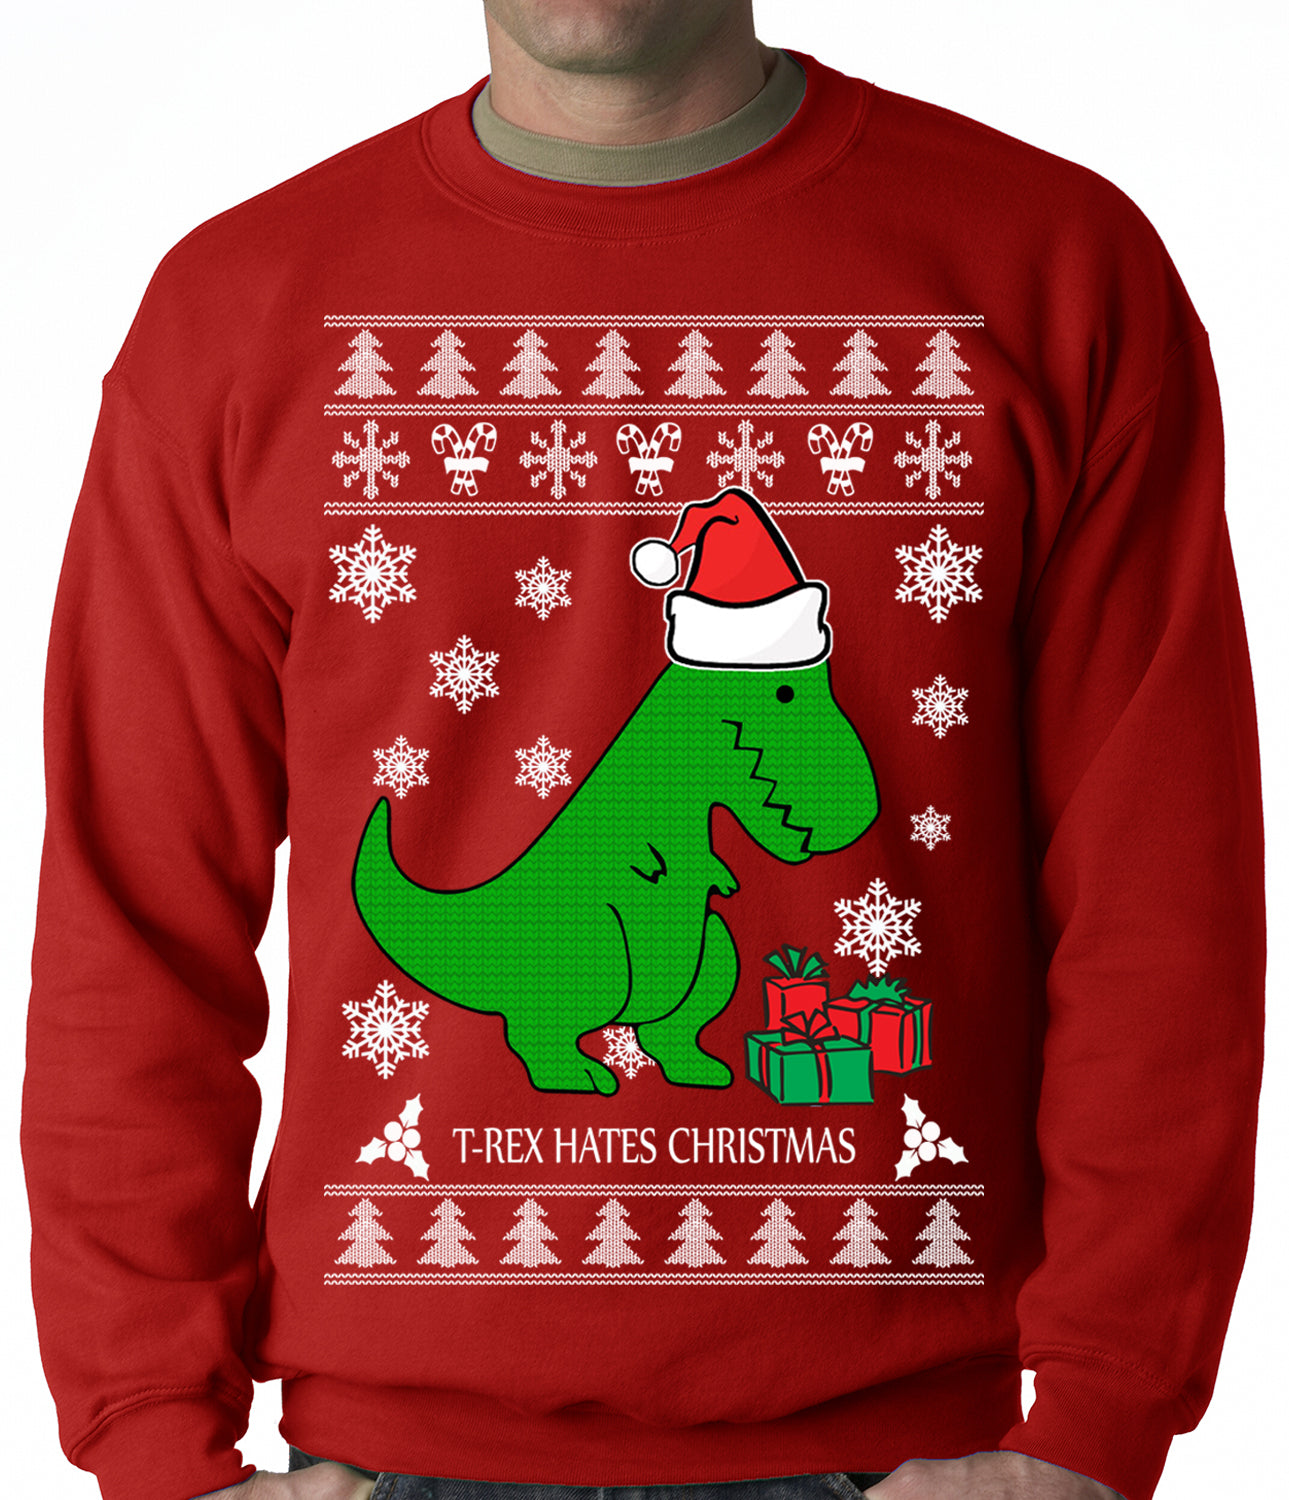 T-Rex Hates Christmas - Ugly Christmas Sweater Adult Crewneck Sweatshi ...